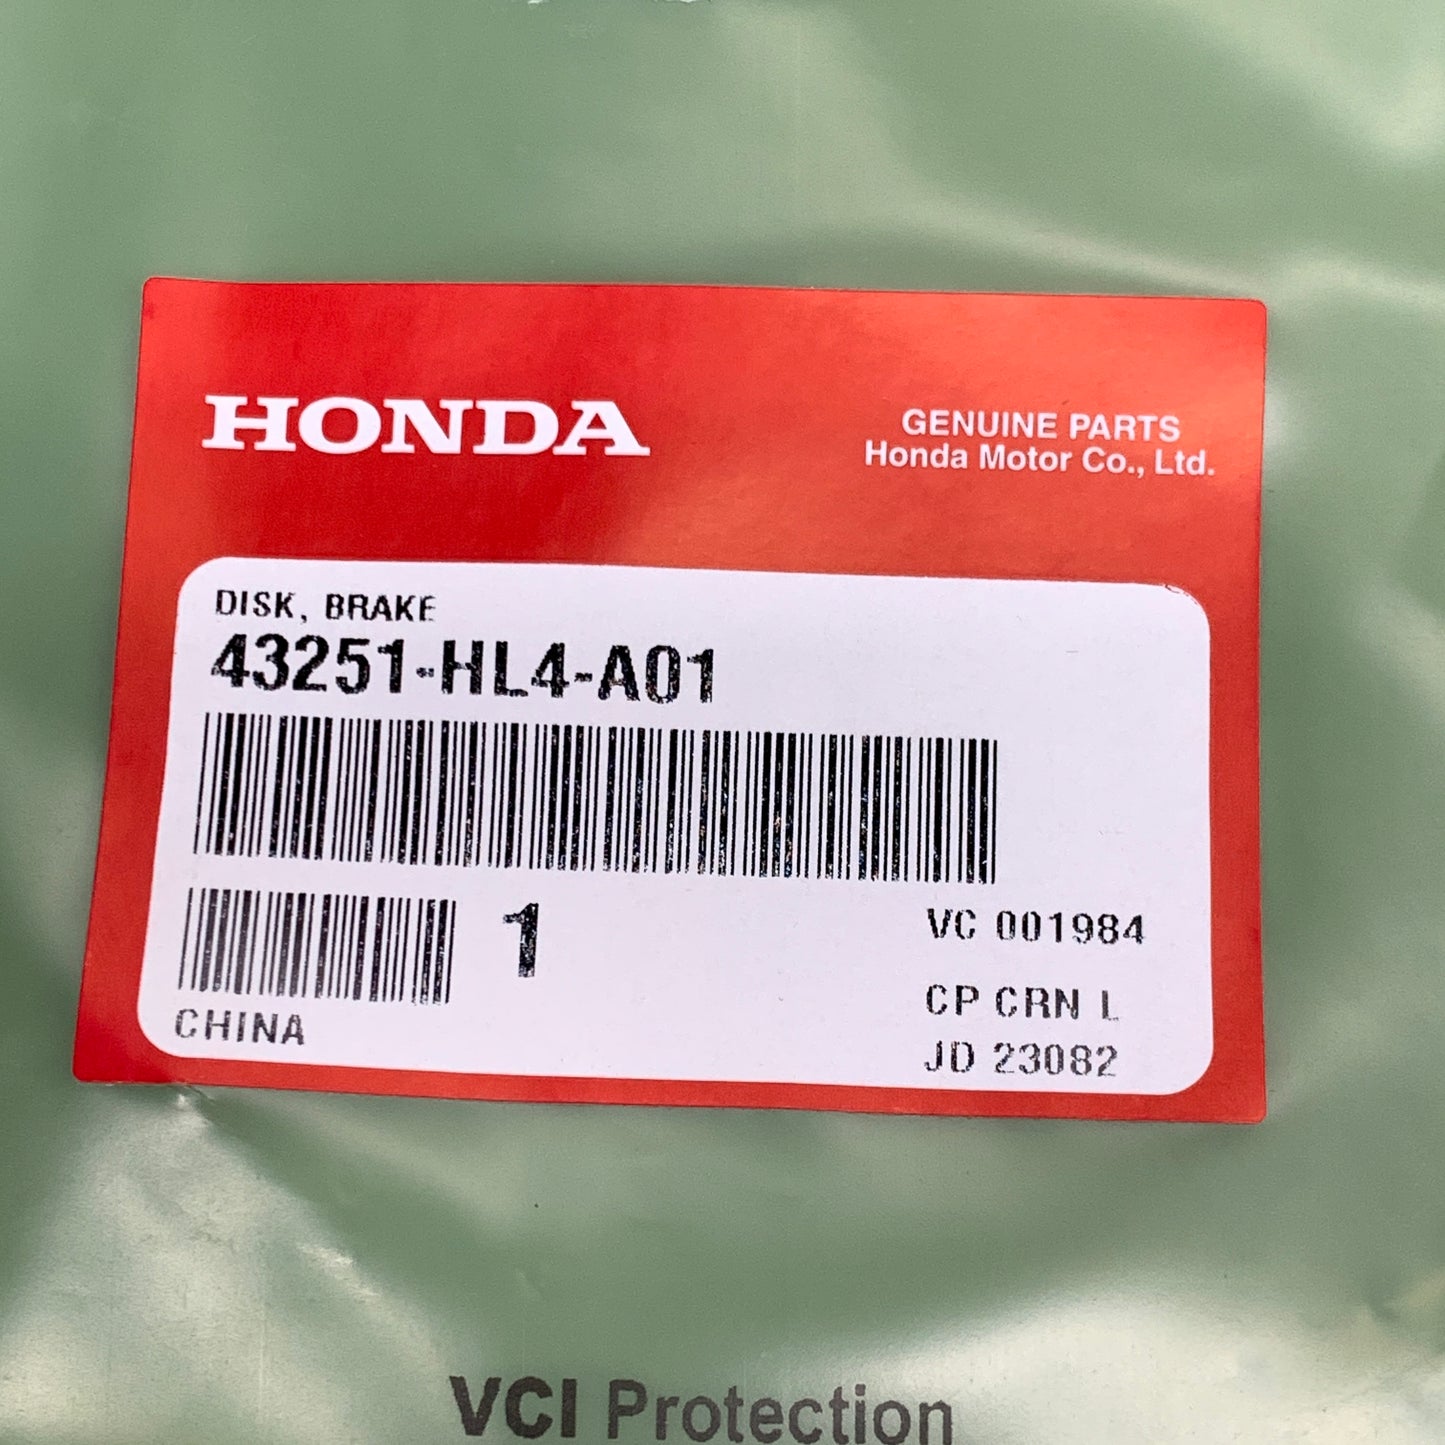 HONDA Brake Disk for Bikes 43251-HL4-A01